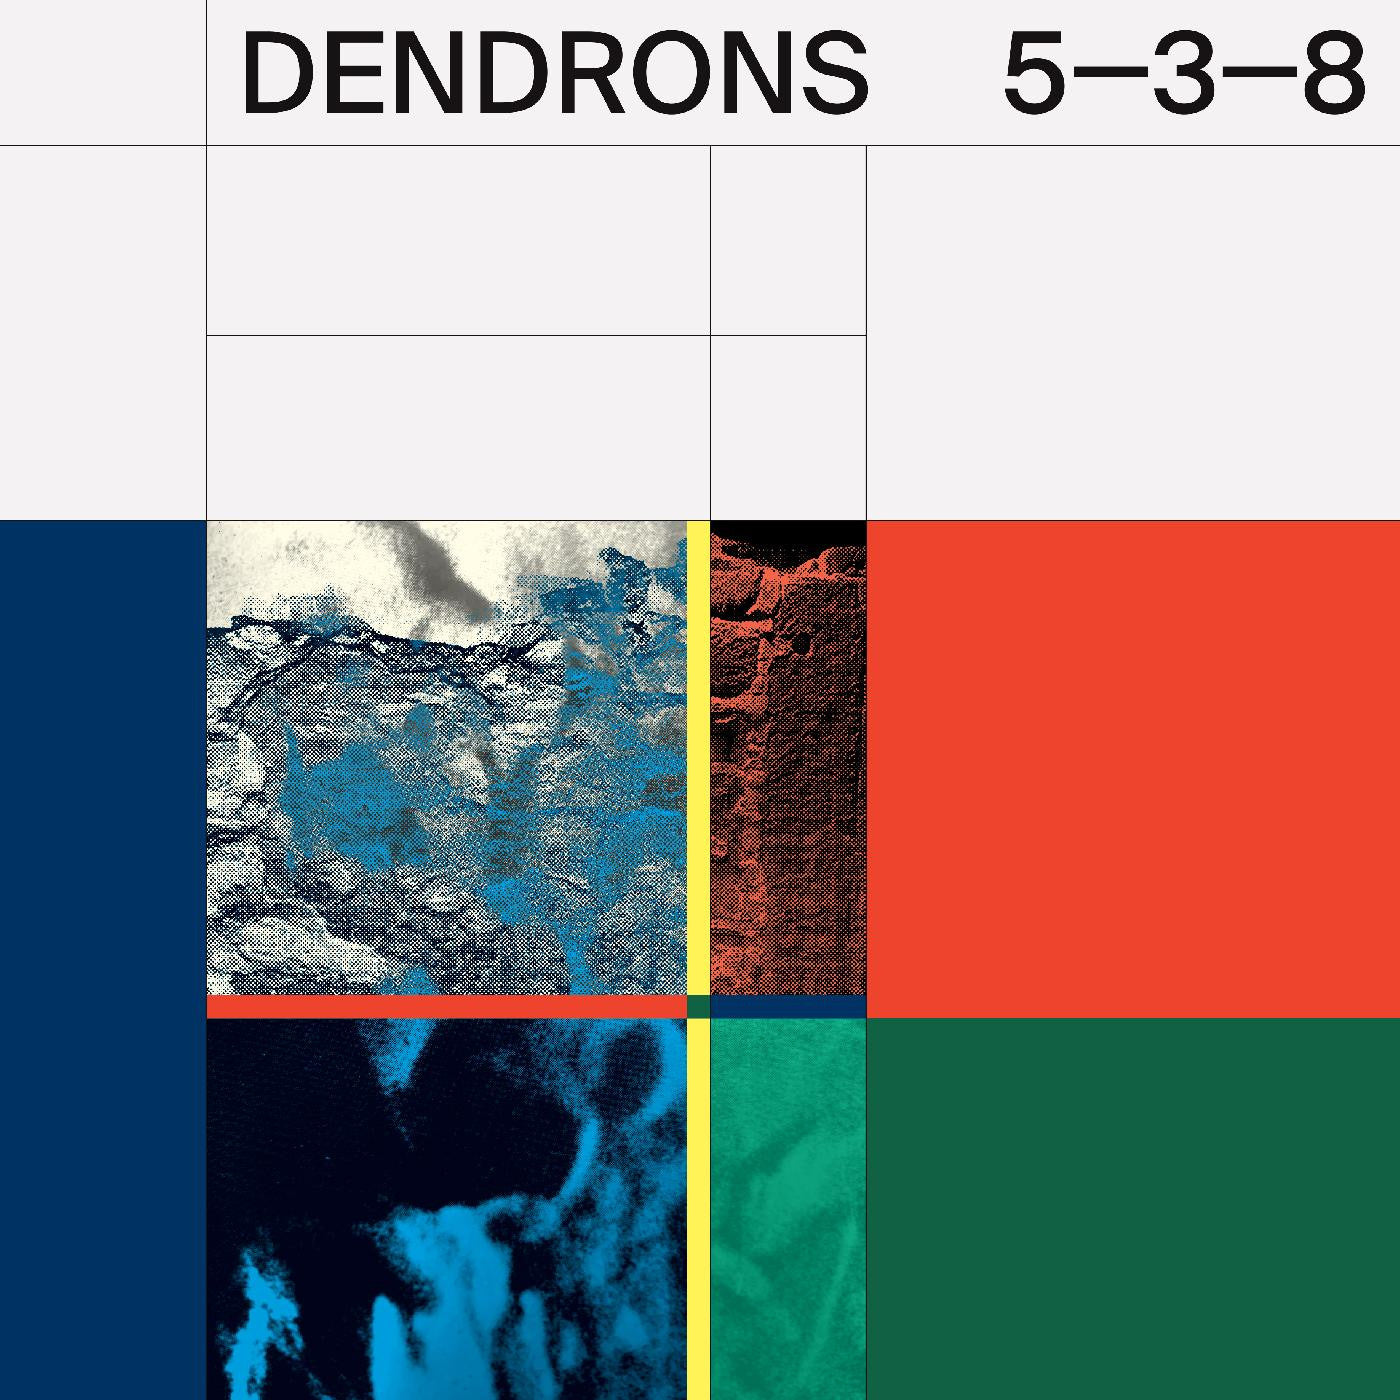 Dendrons - 5-3-8 (Vinyl LP)